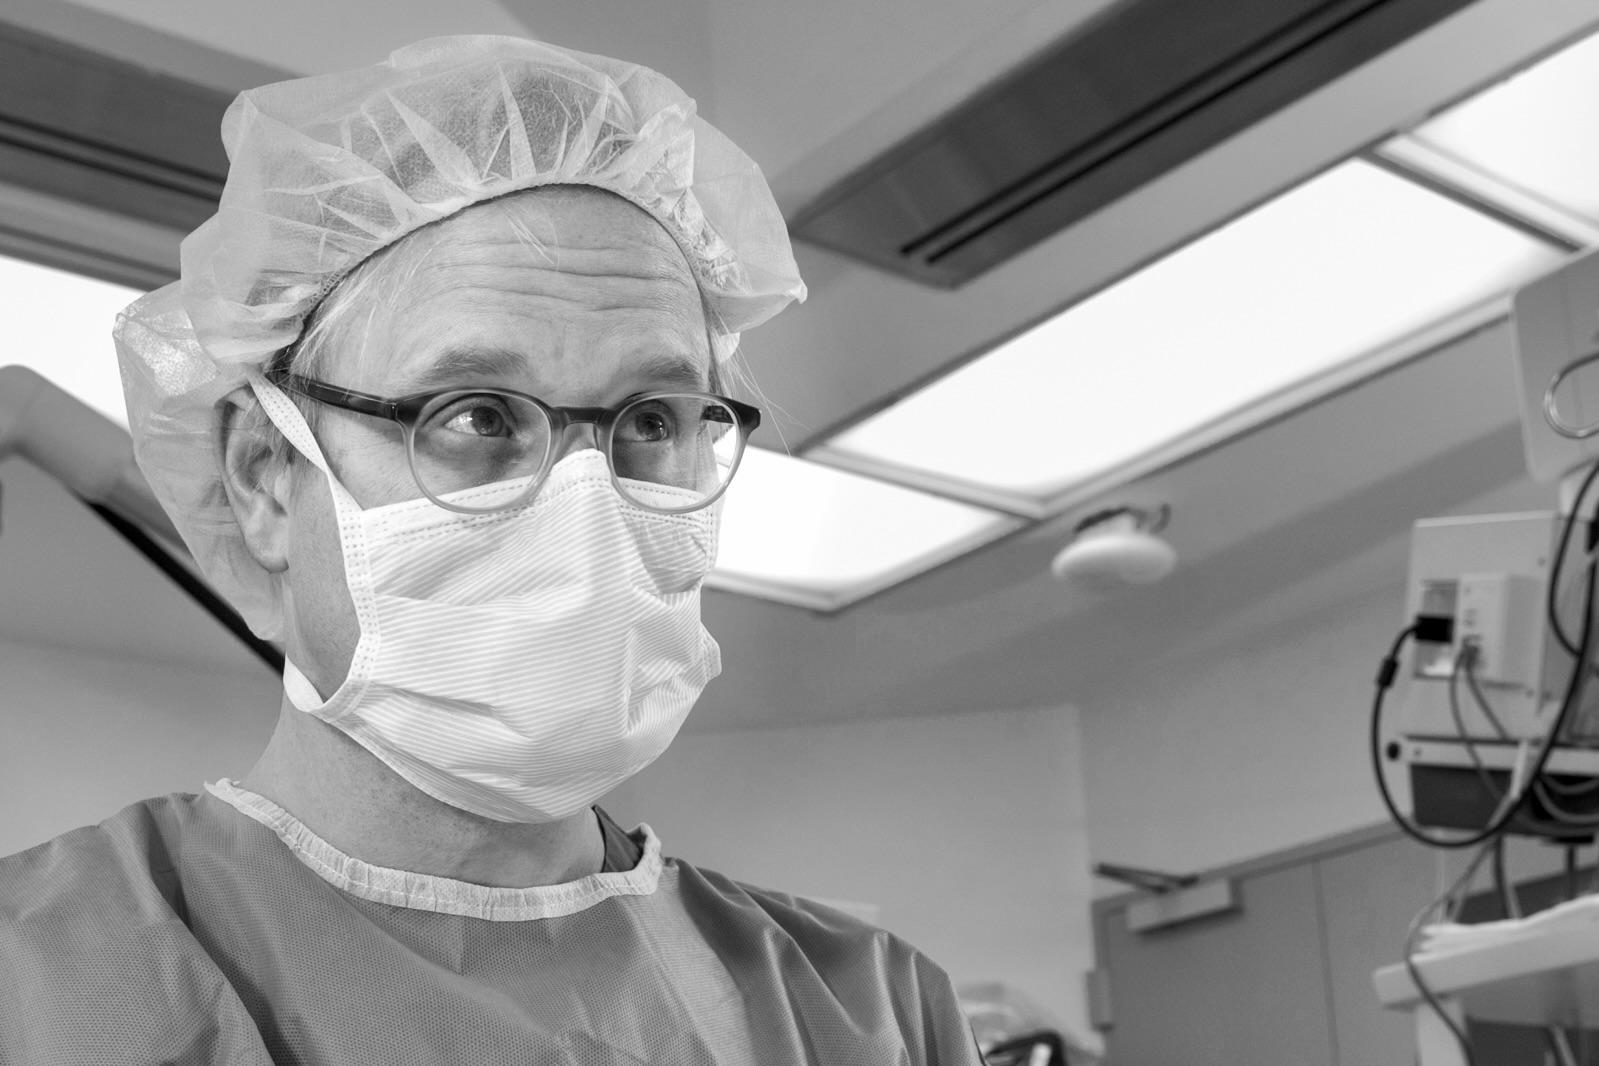 Neurosurgeon Raymond Sekula in scrubs in the OR